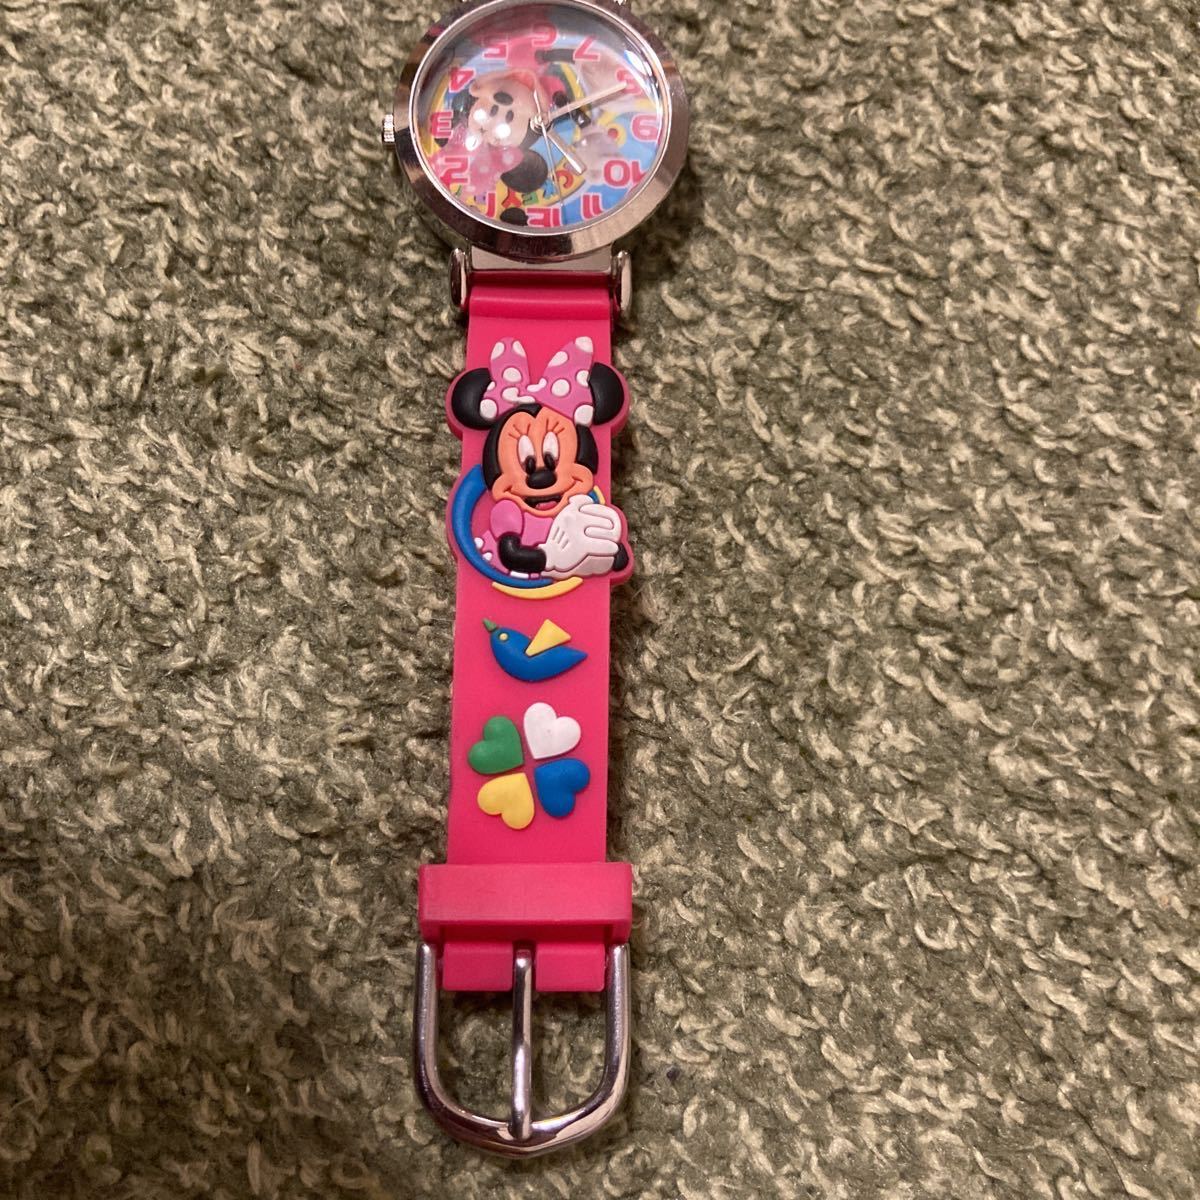  Kids наручные часы Disney Minnie Mouse minnie Chan Disney аналог ребенок часы [ утиль ]